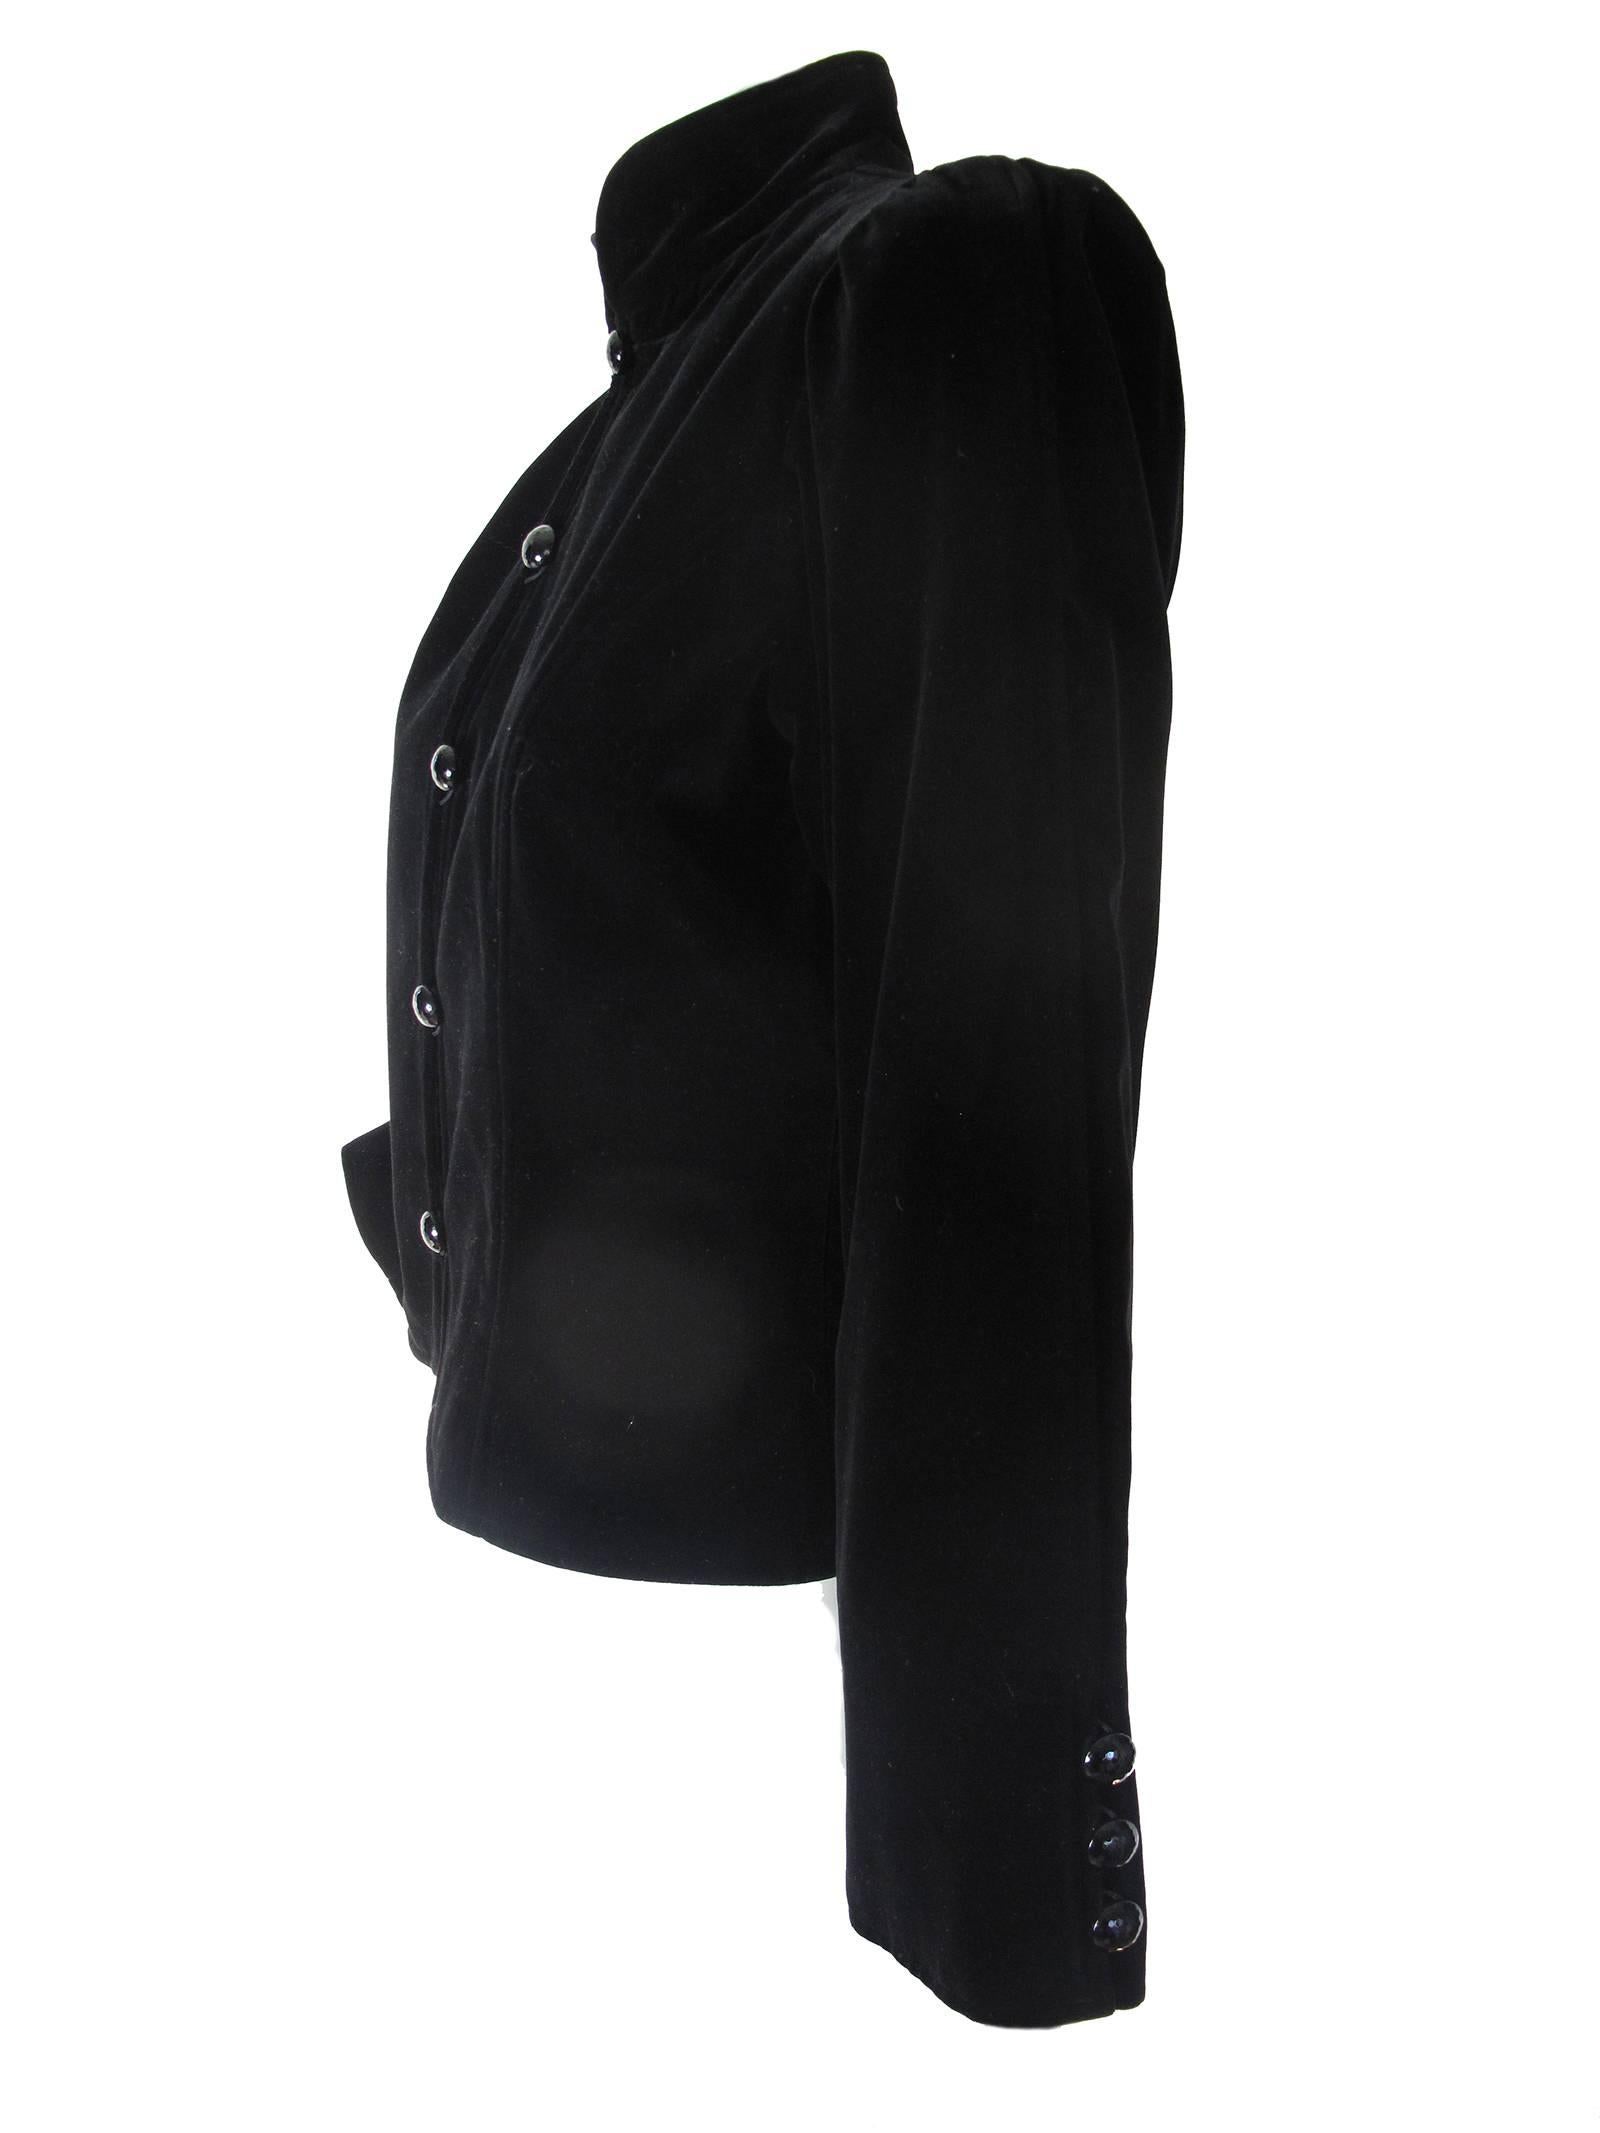 Black Yves Saint Laurent Velvet Jacket, 1980s  